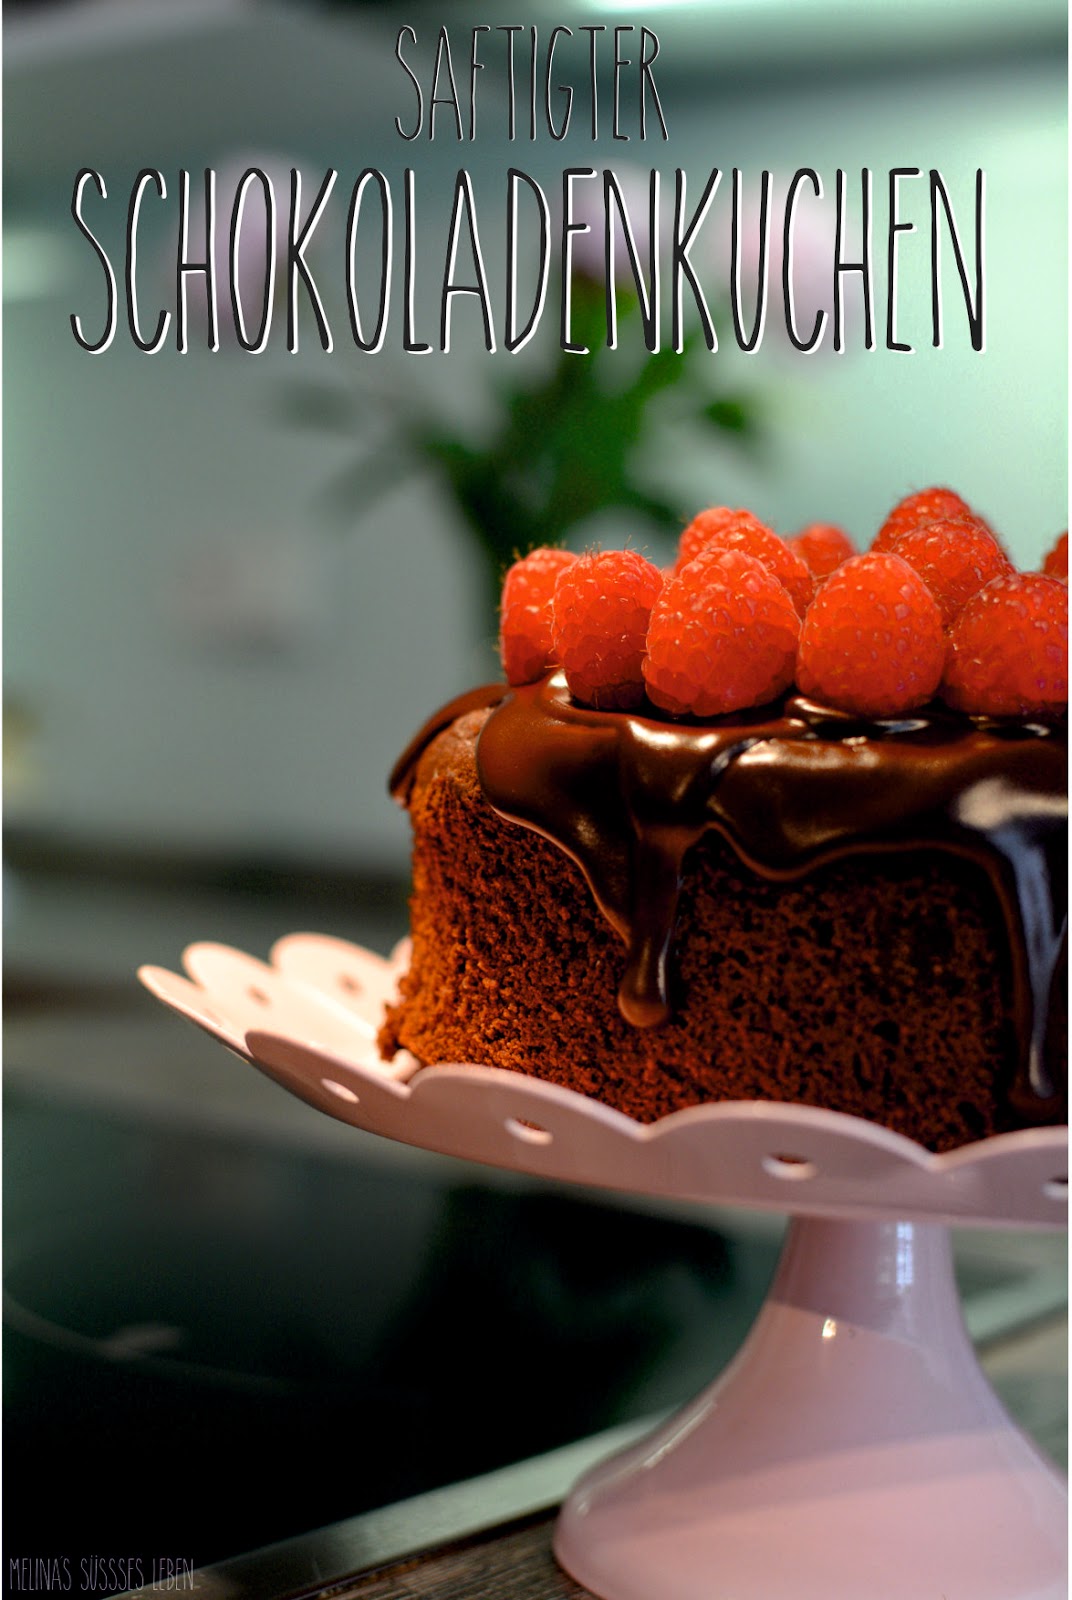 Schokoladenkuchen Im Einweckglas Gebacken — Rezepte Suchen